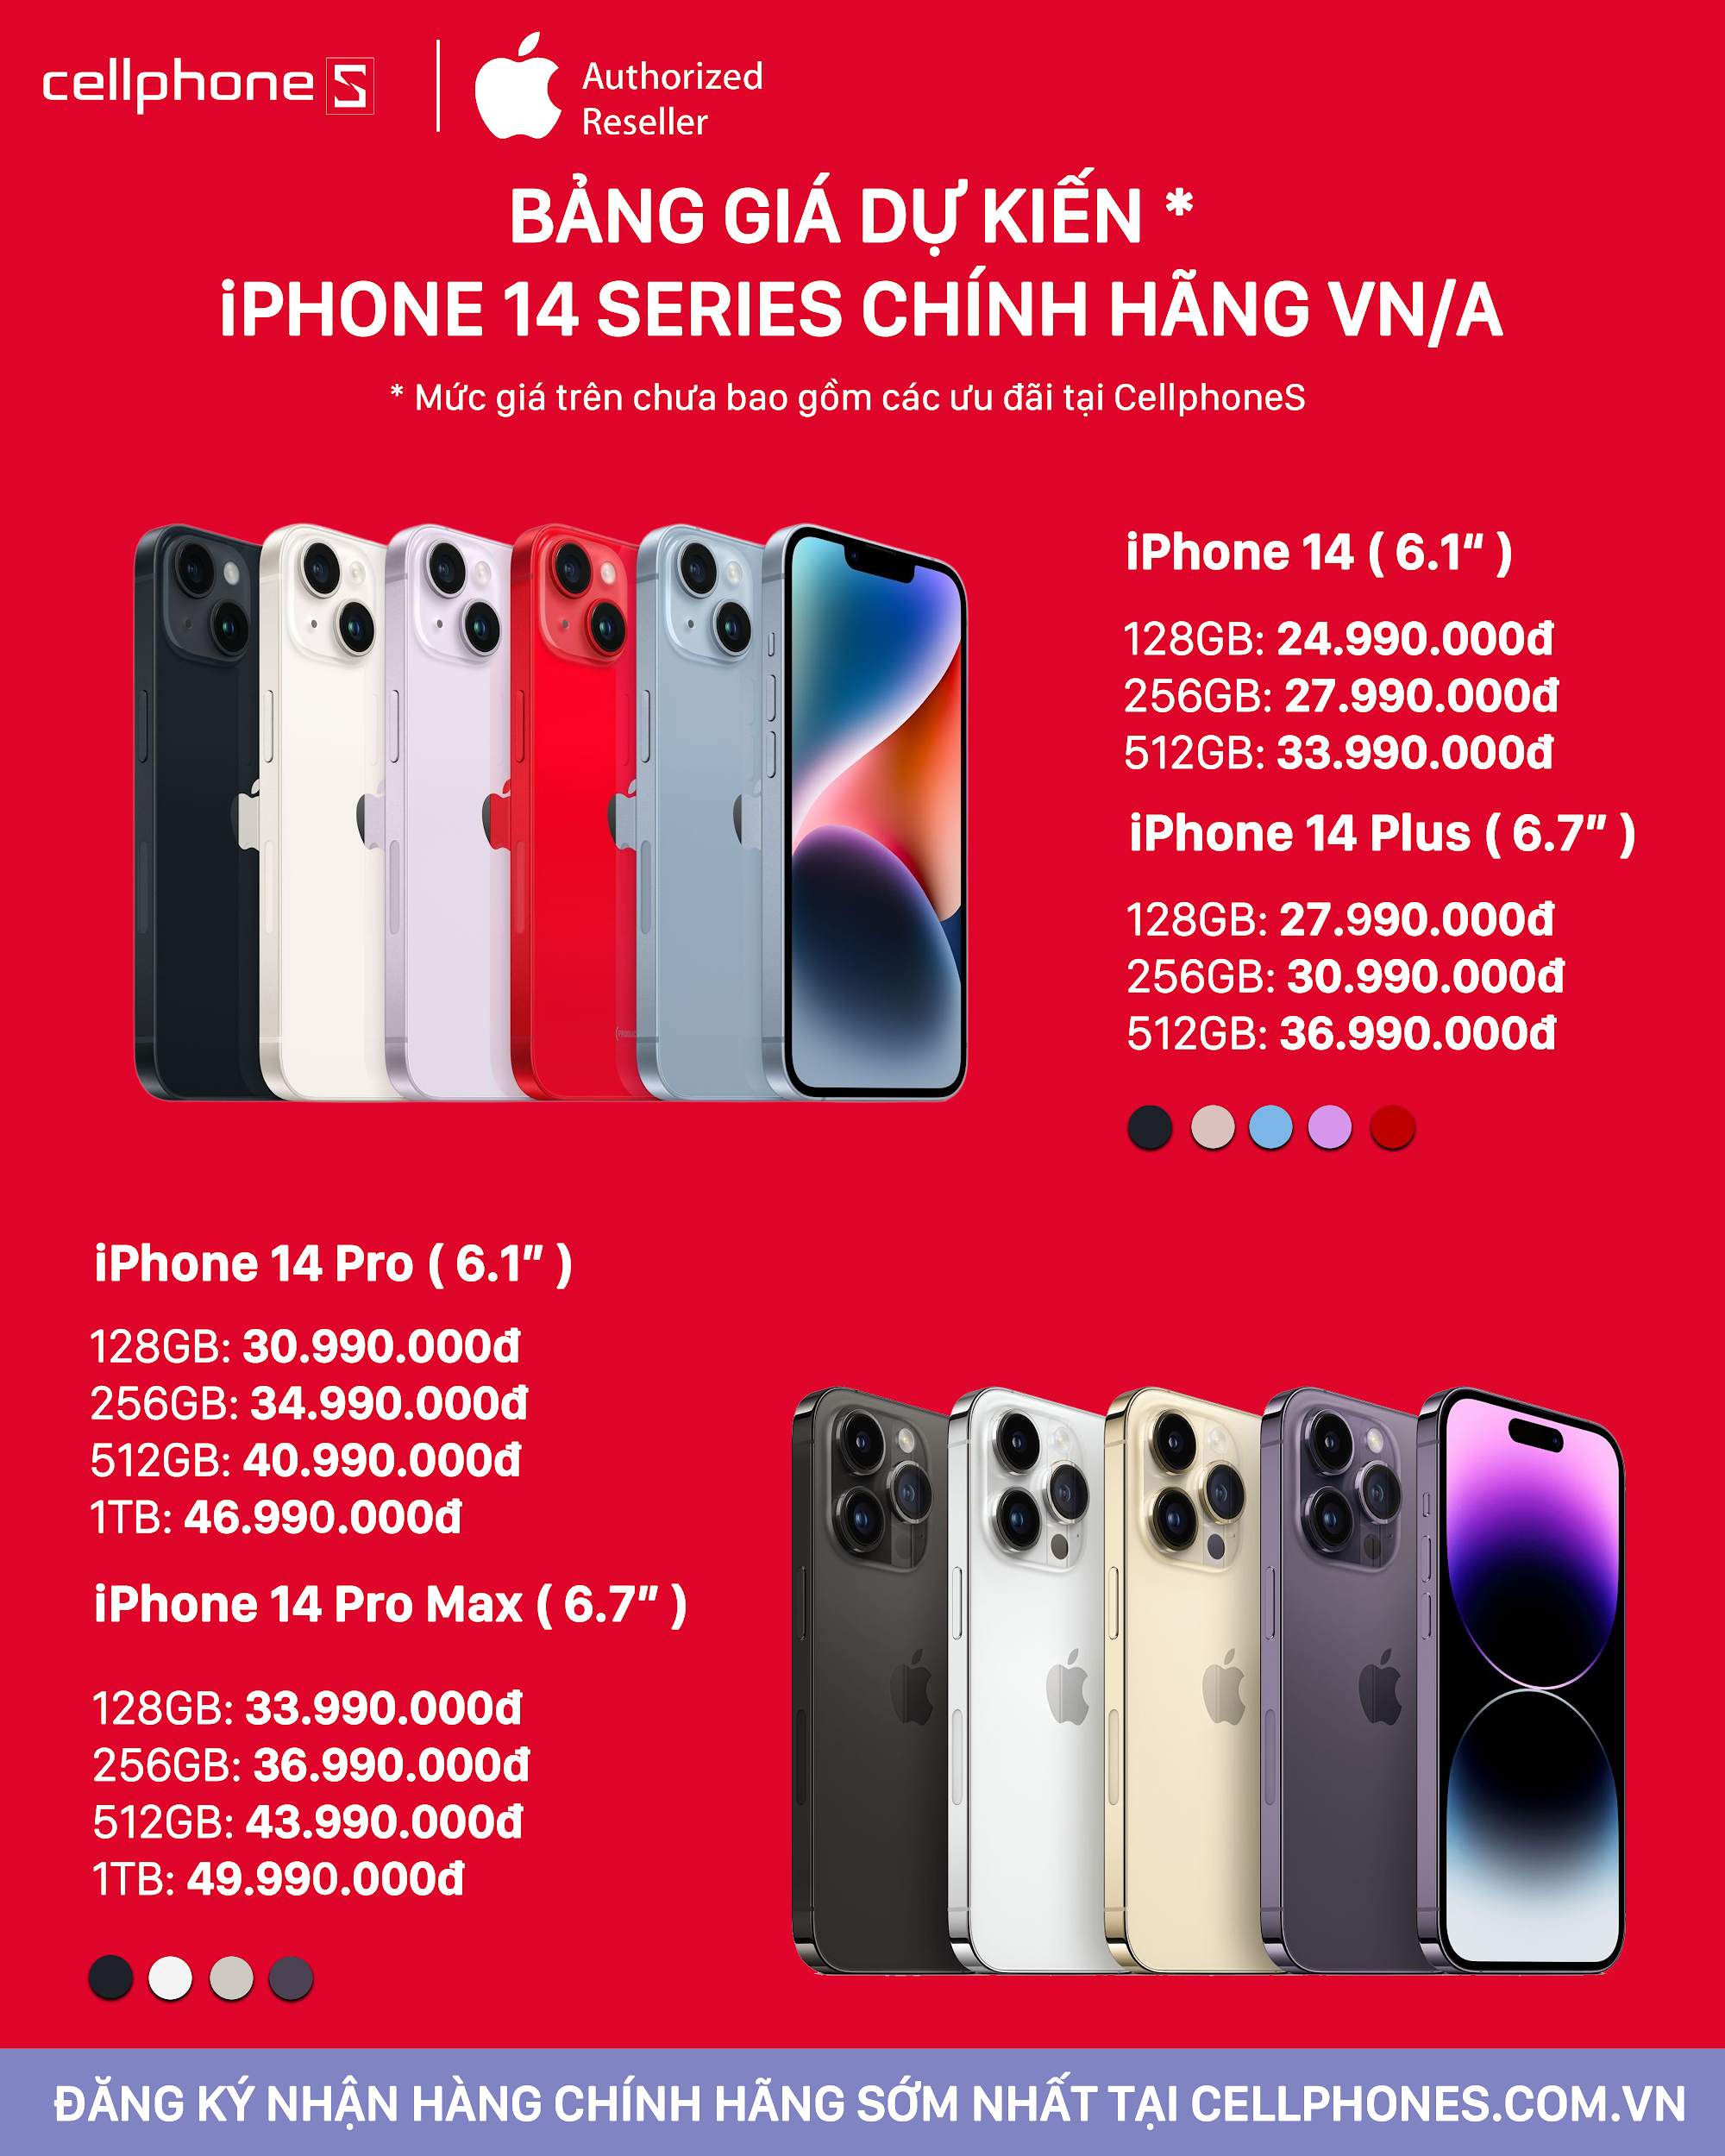 Đã có thời gian đặt trước và mở bán iPhone 14 series chính hãng tại Việt Nam - Ảnh 1.